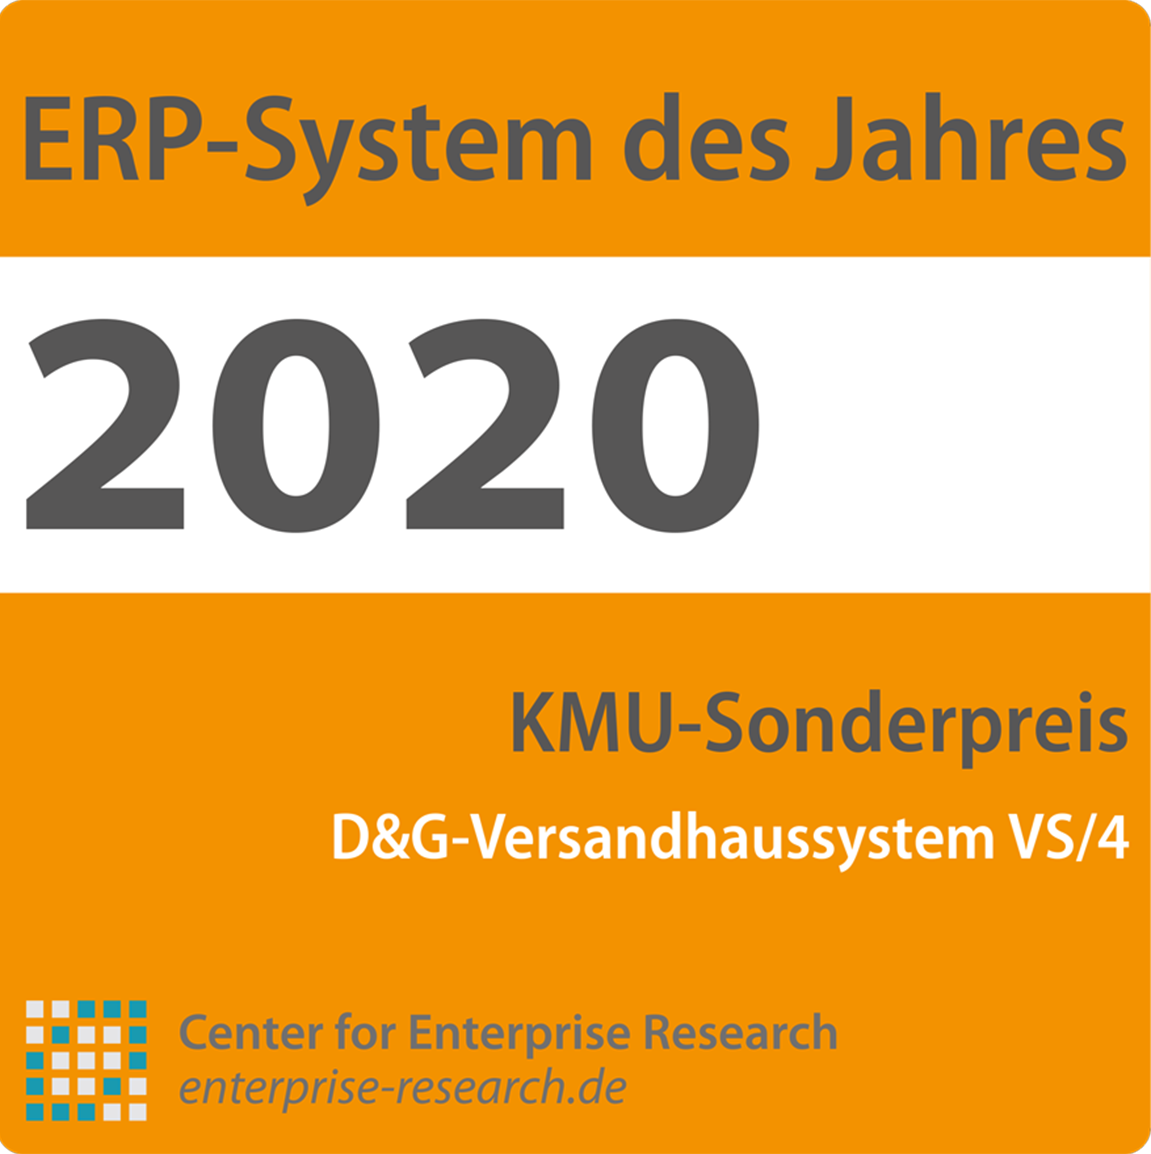 ERP-System des Jahres - zweichfache Auszeichnung für das D&G-Versandhaus-System VS/4